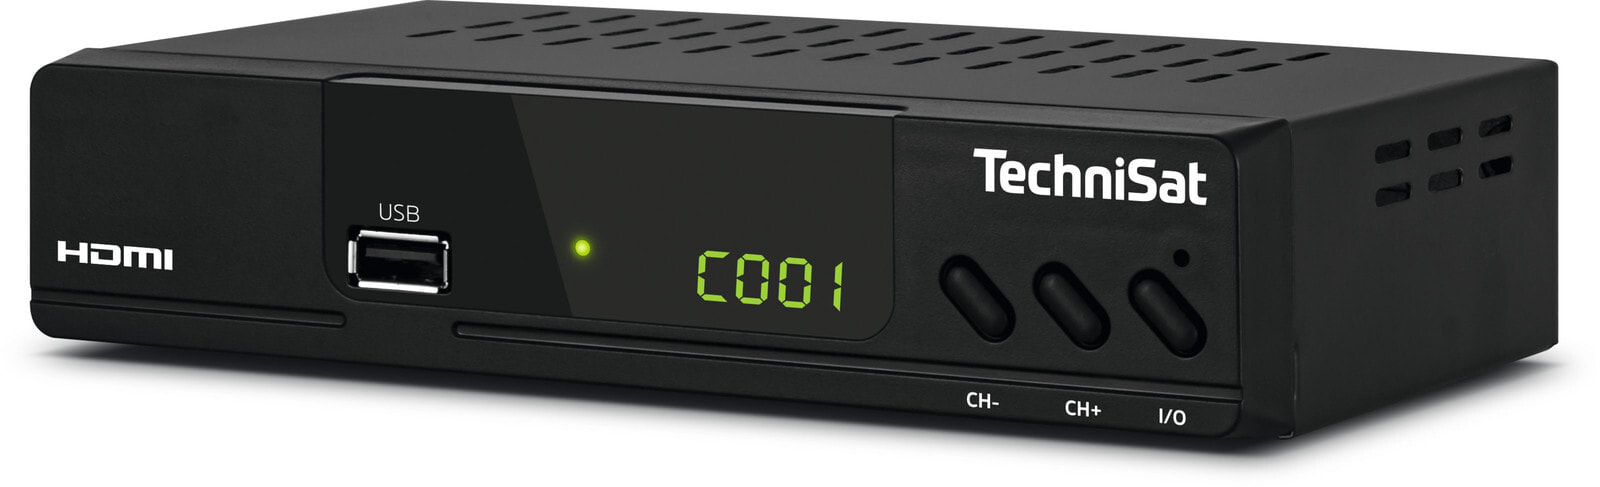 Dvb c кабельная. HD-ресивер DVB-C AKD-HD-0264. Кабельный тюнер DVB-C. DVB C приставка для кабельного ТВ. Ресиверы кабельного телевидения Texas instruments.